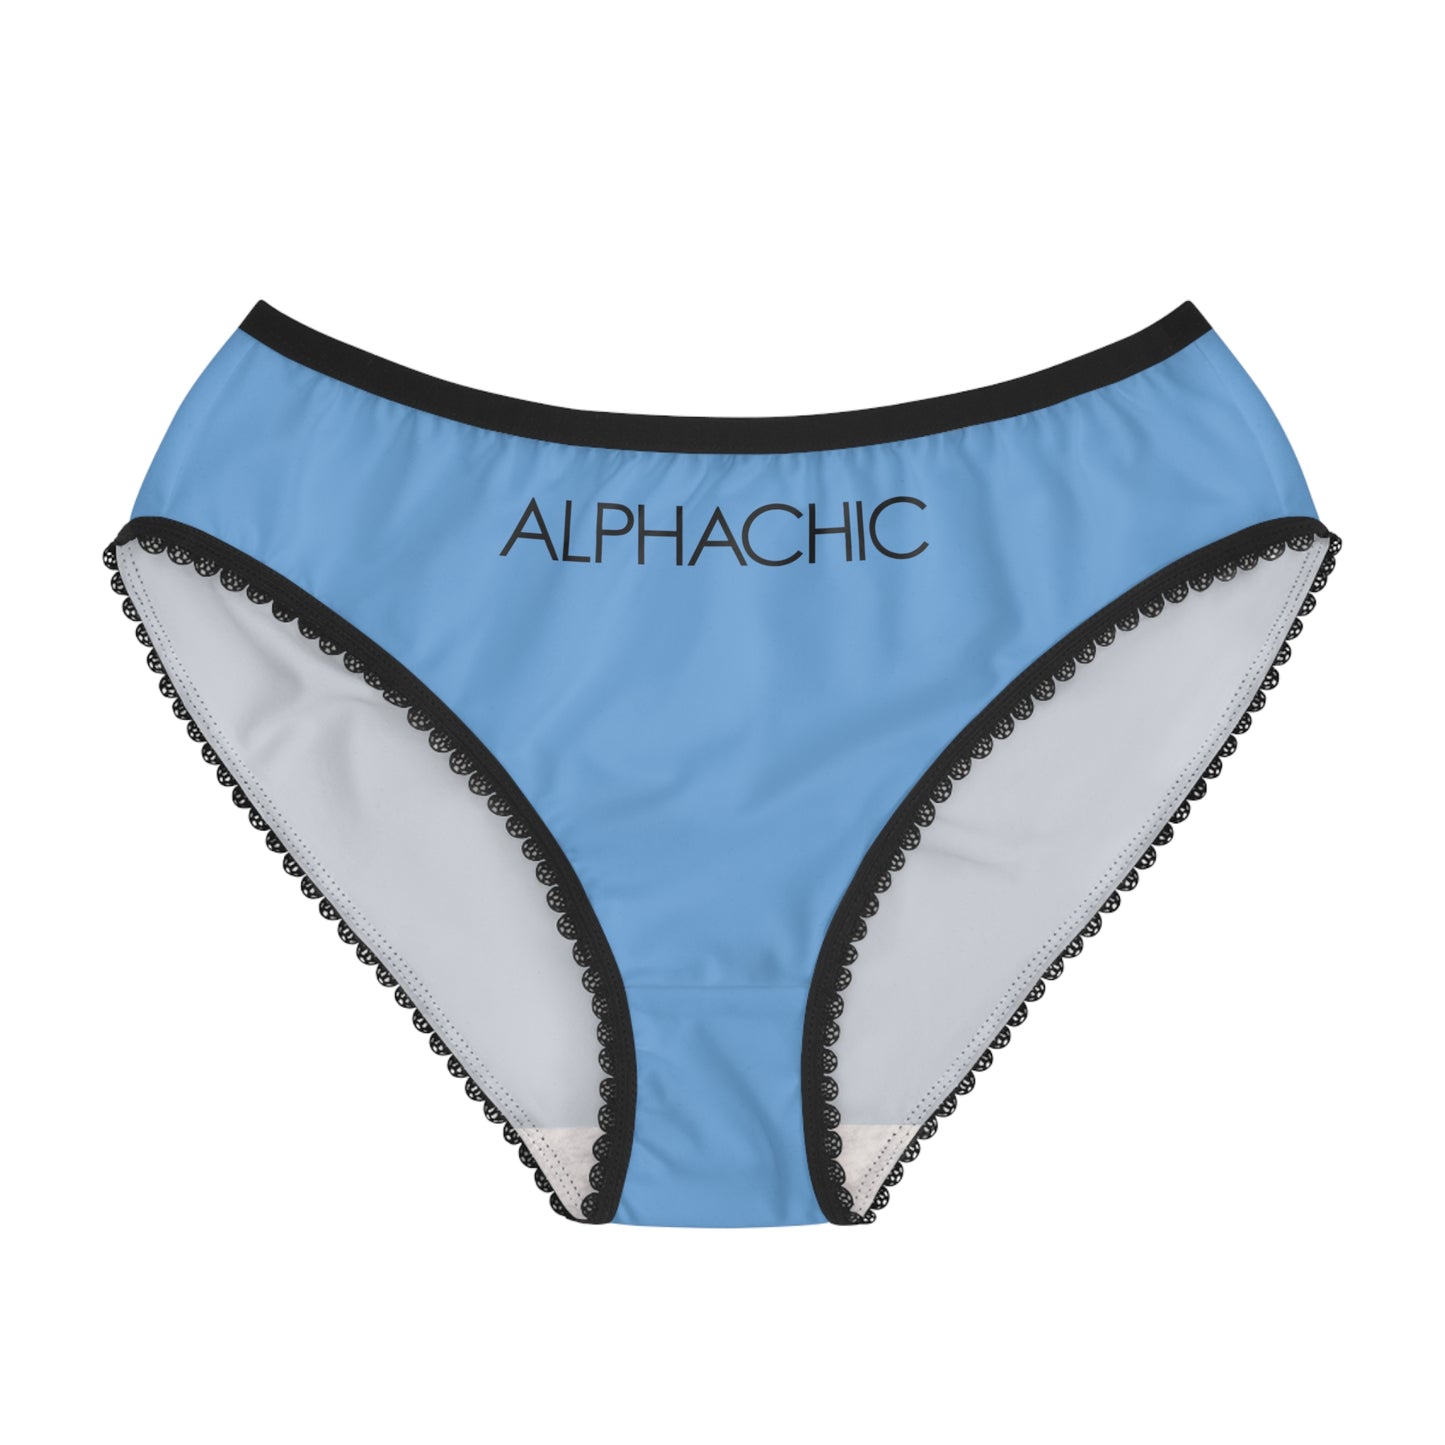 AlphaChic Briefs - Light Blue